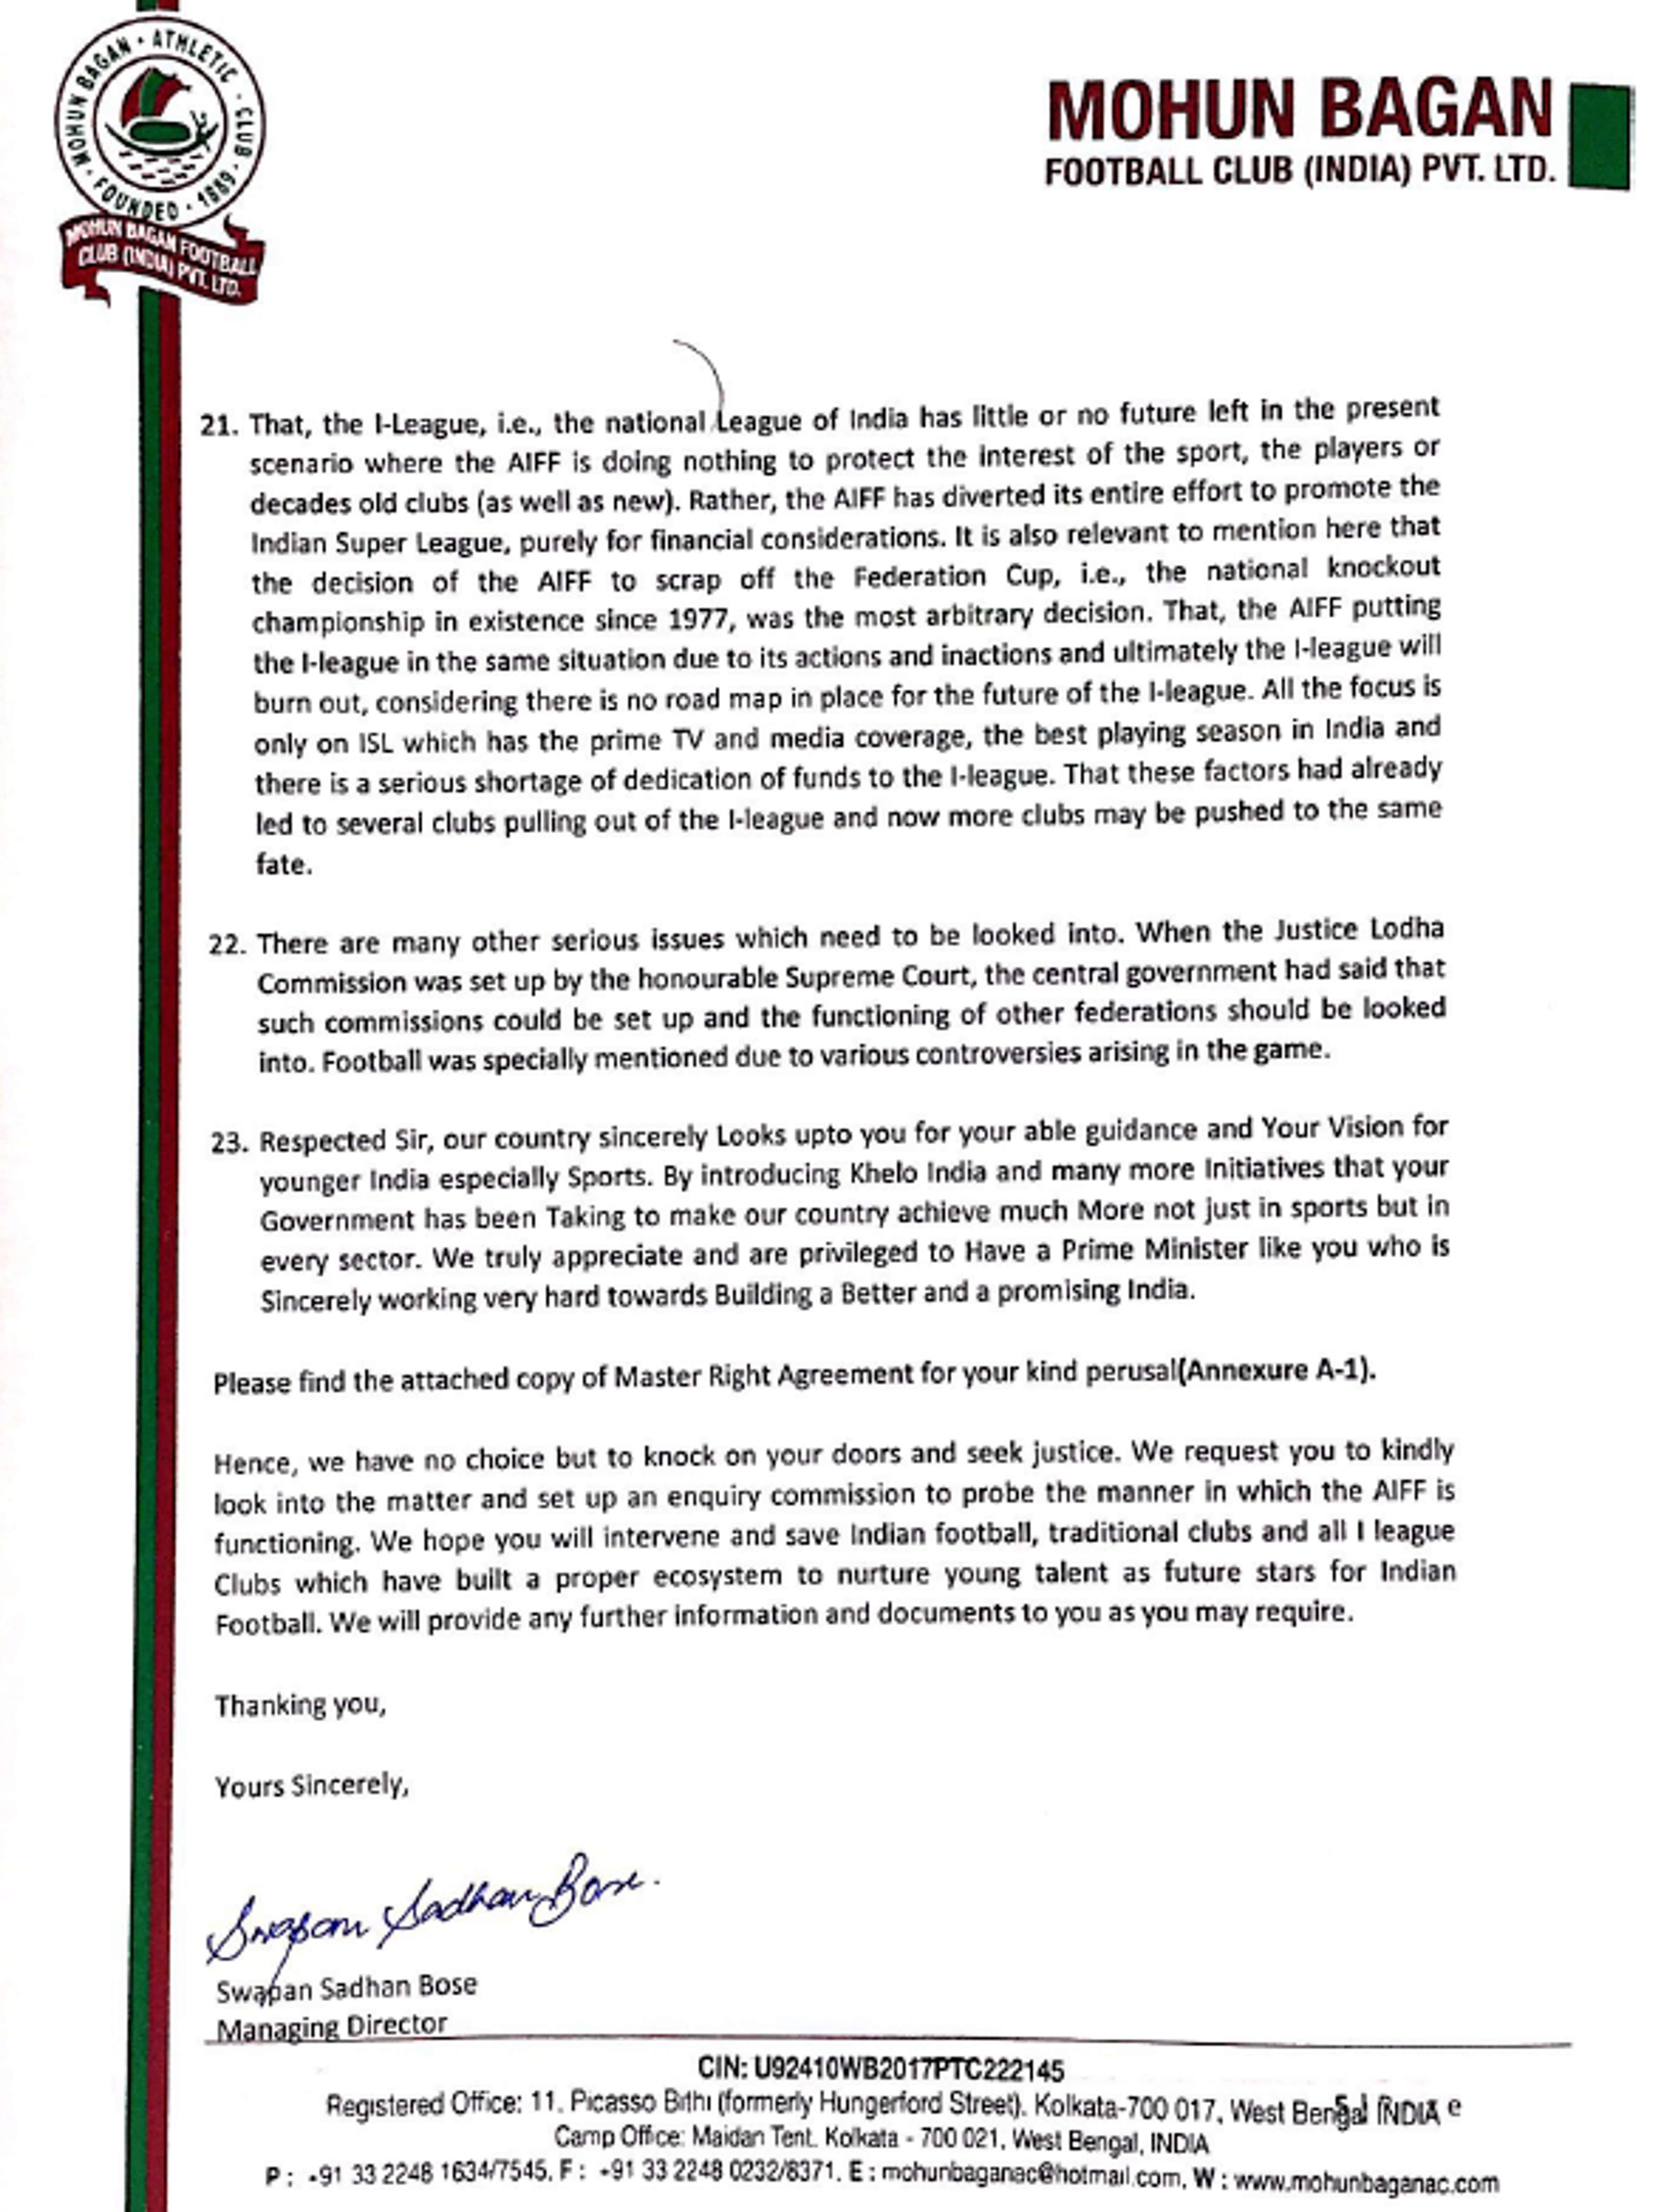 Page 5 - Mohun Bagan letter to PM Modi